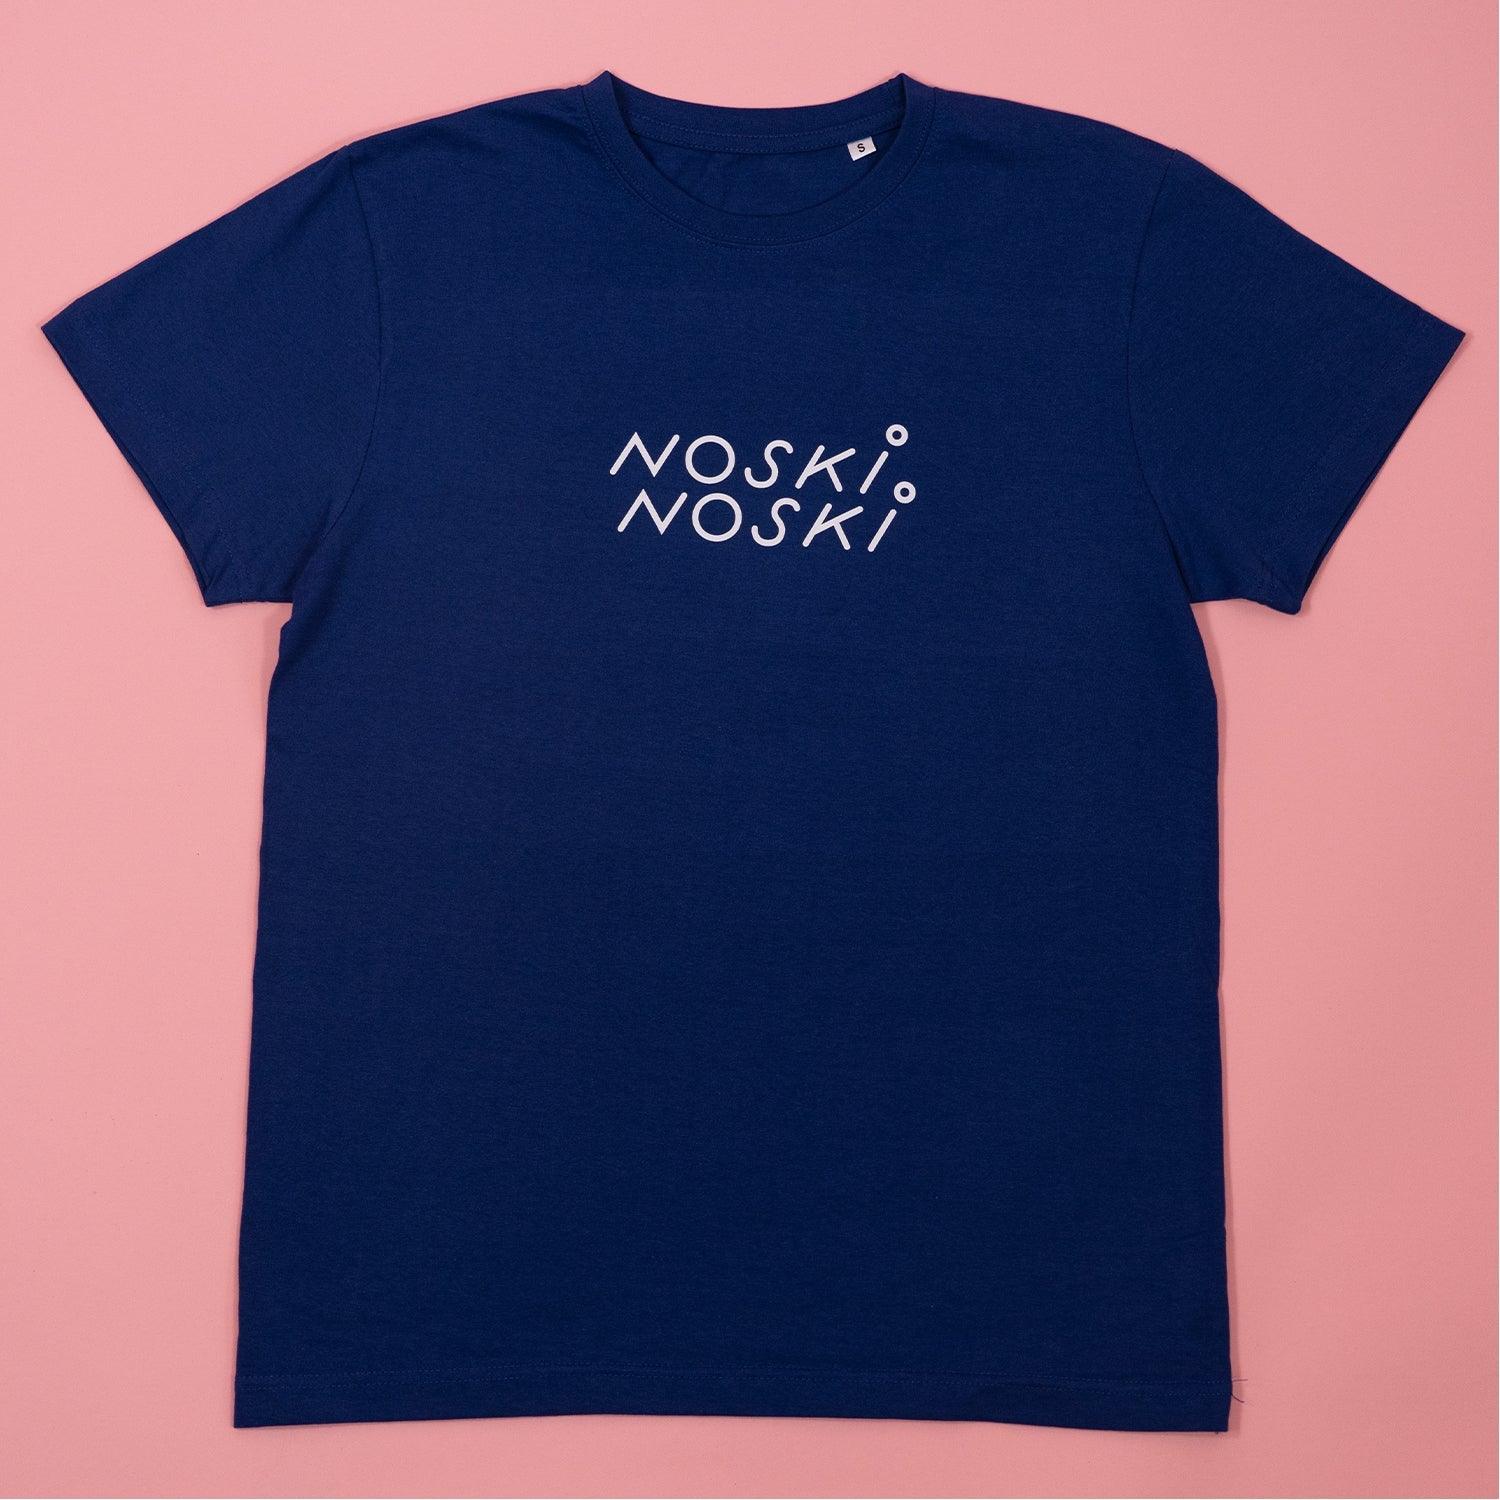 Noski Noski: chemise nn